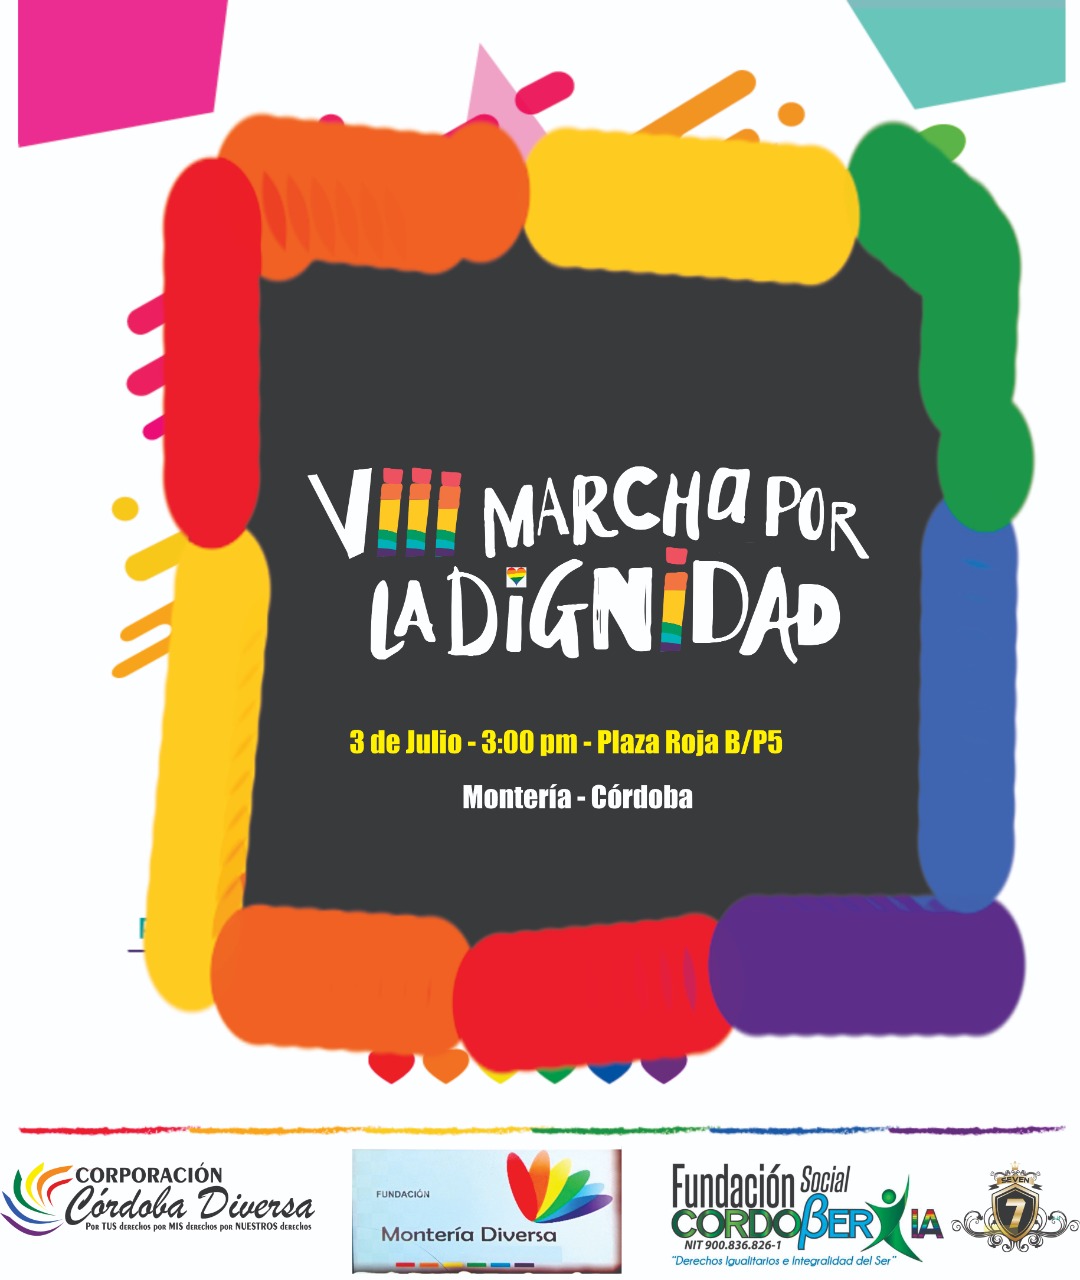  8 Marcha Por La Dignidad Montera 2022 [MONTERA] 